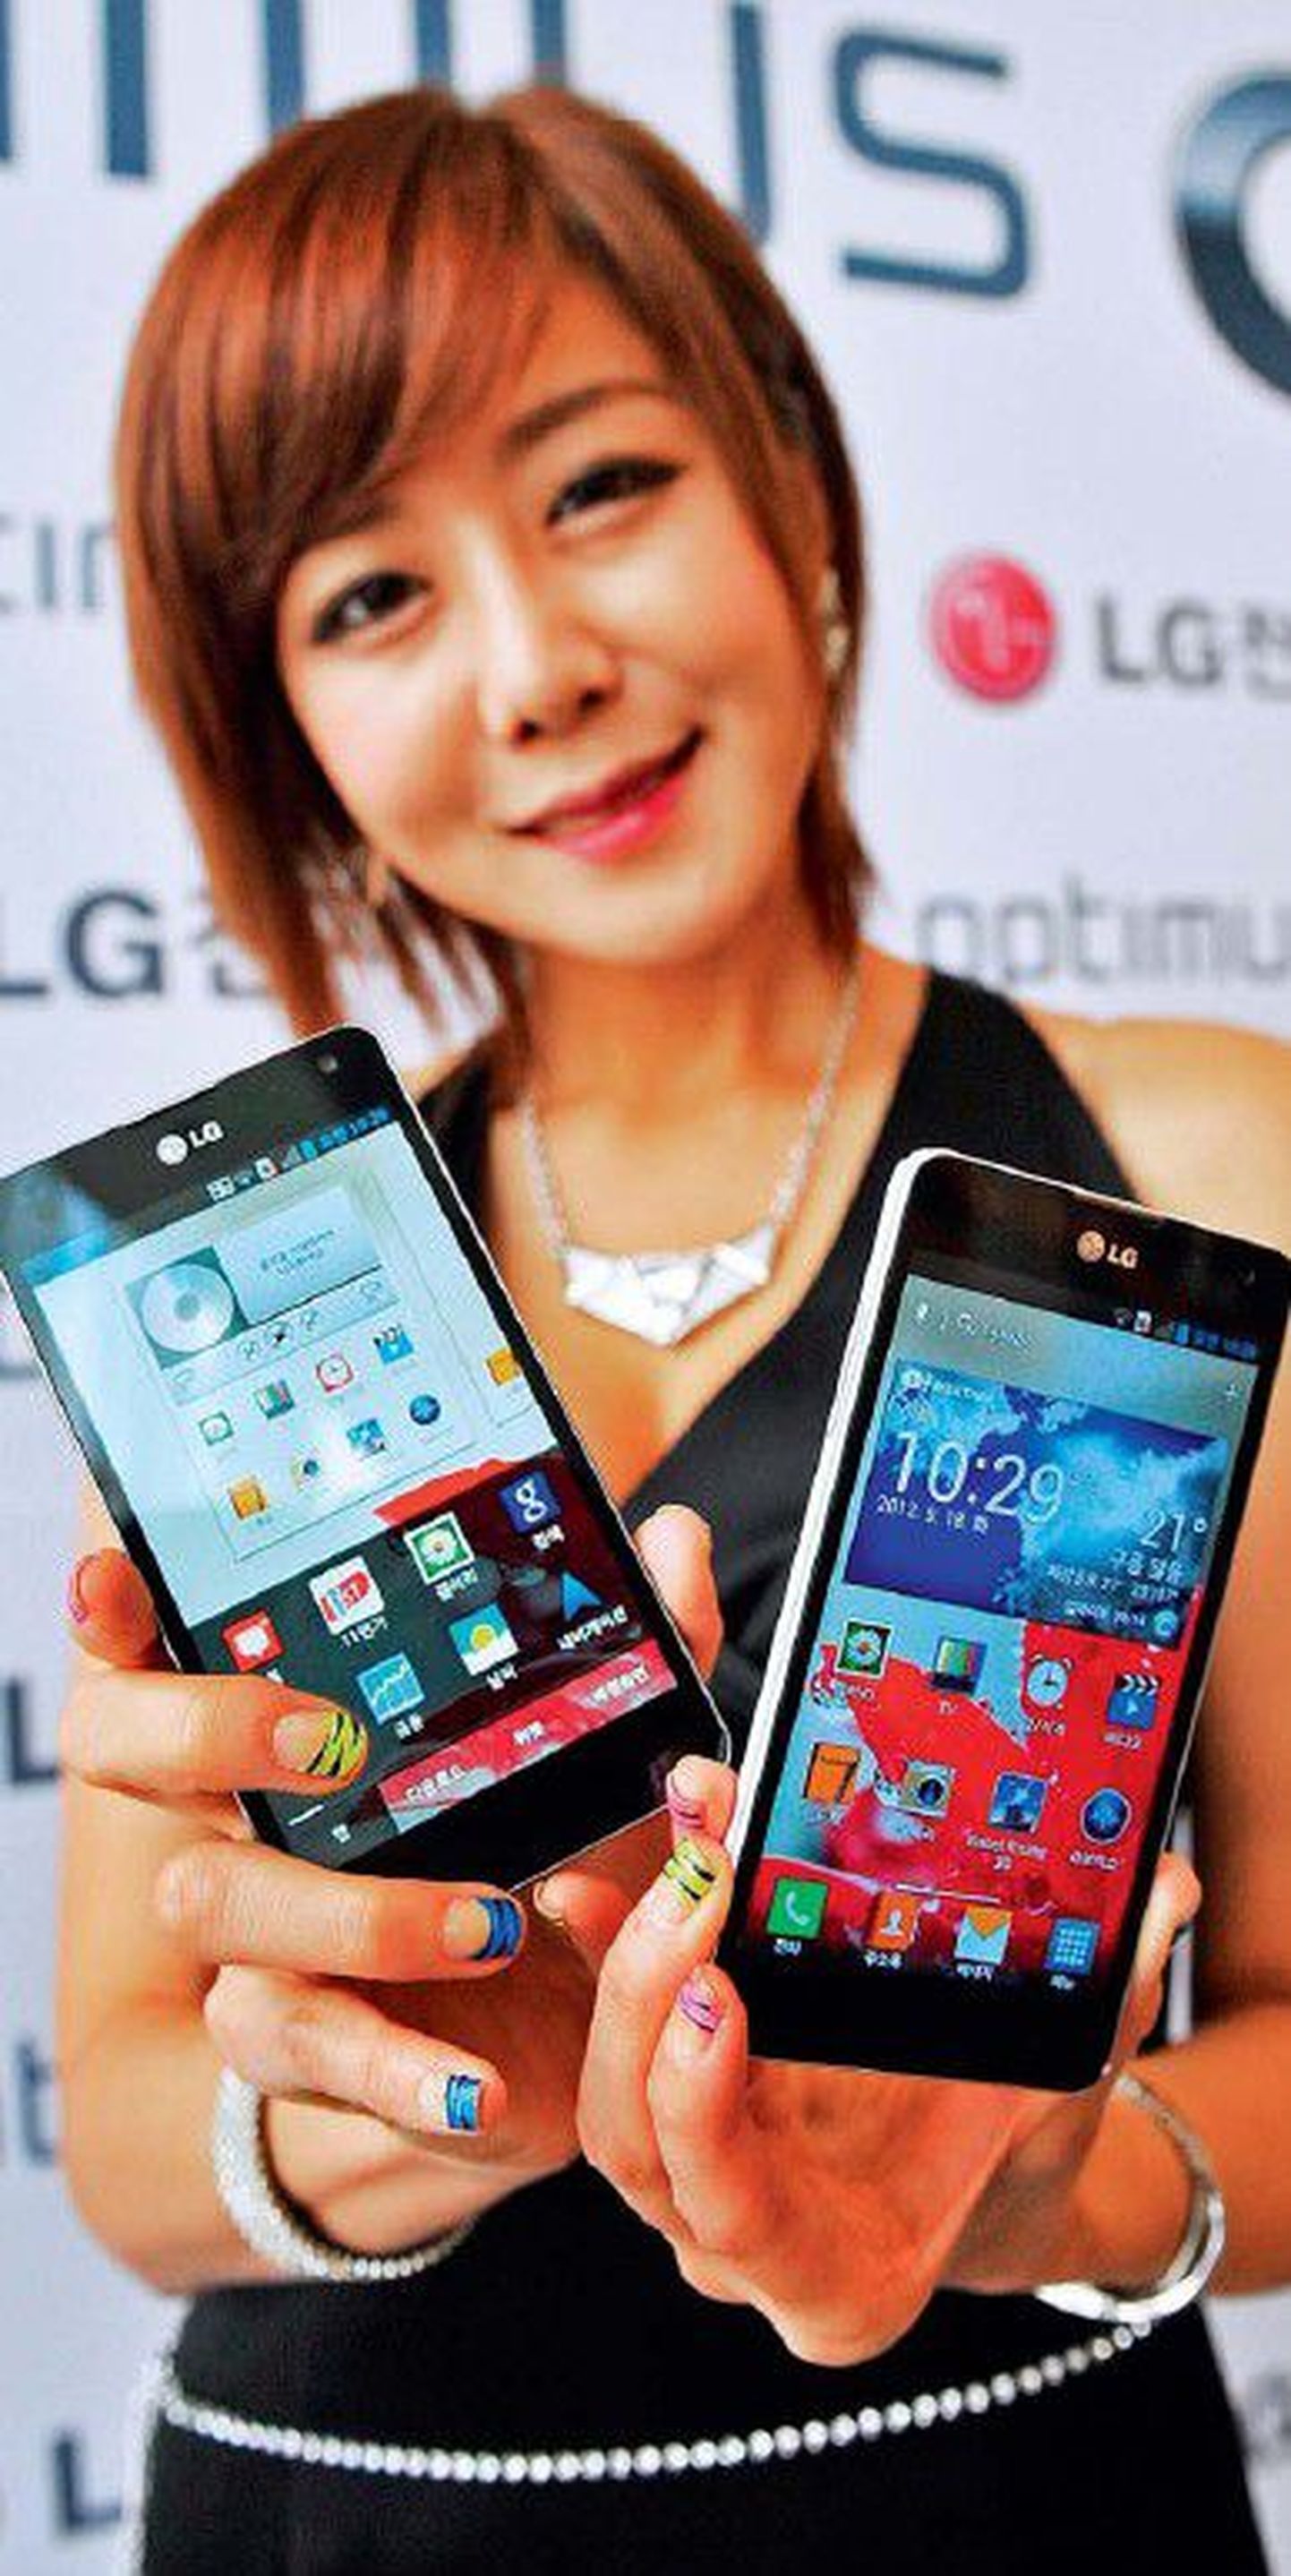 Lõuna-Korea modell esitleb LG uut nutitelefoni Optimus G.